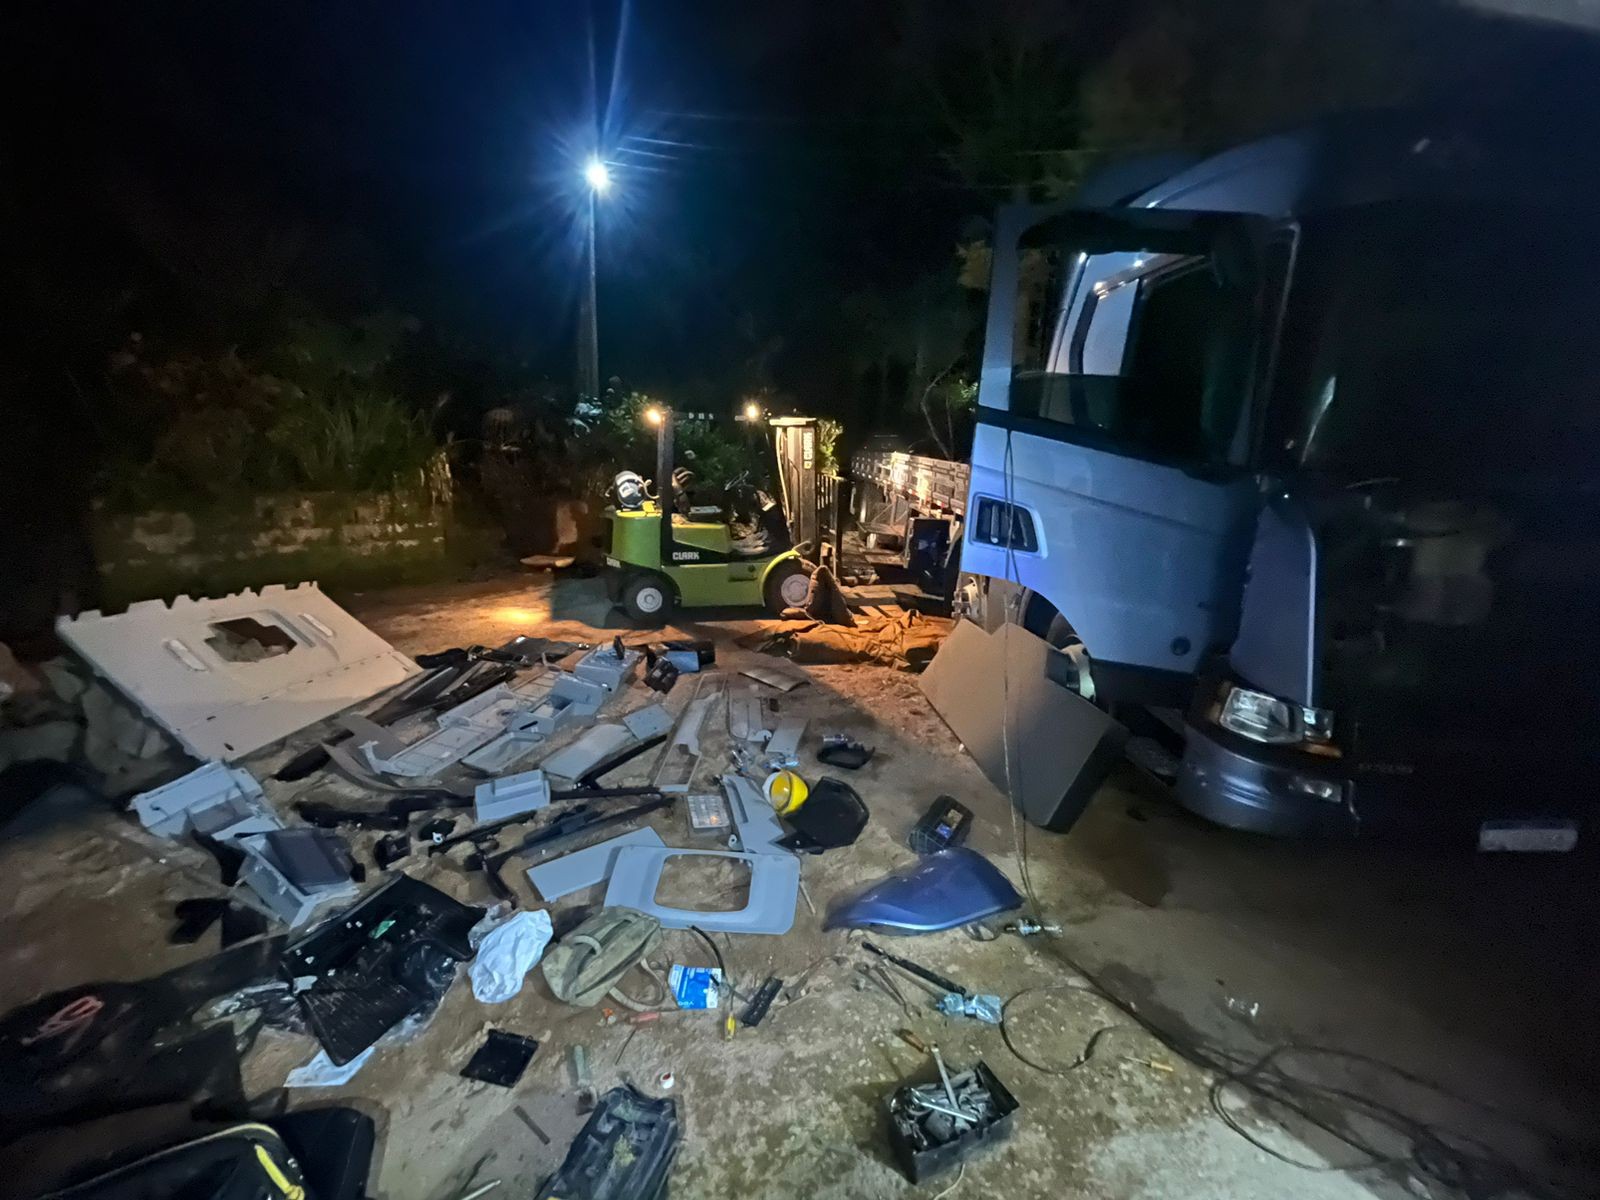 Homens são presos suspeitos de roubar caminhão e manter família refém em chácara de São Roque